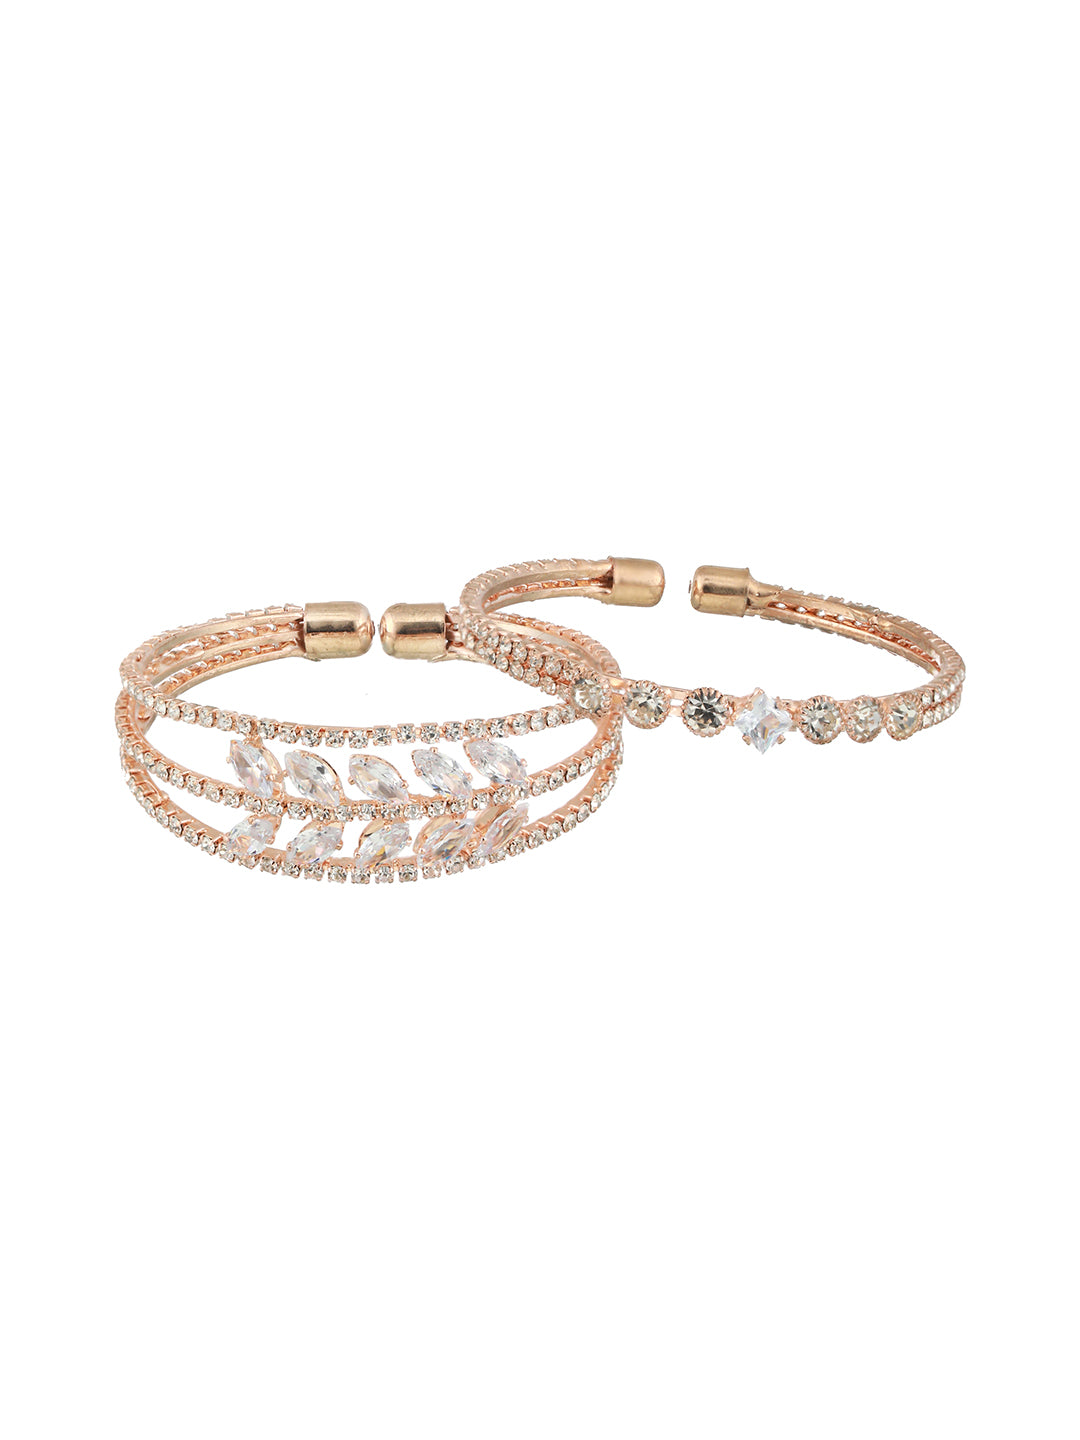 Jazz And Sizzle Set Of 2 Rose Gold-Plated White Crystal Studded Bangle Style Cuff Bracelet - Jazzandsizzle